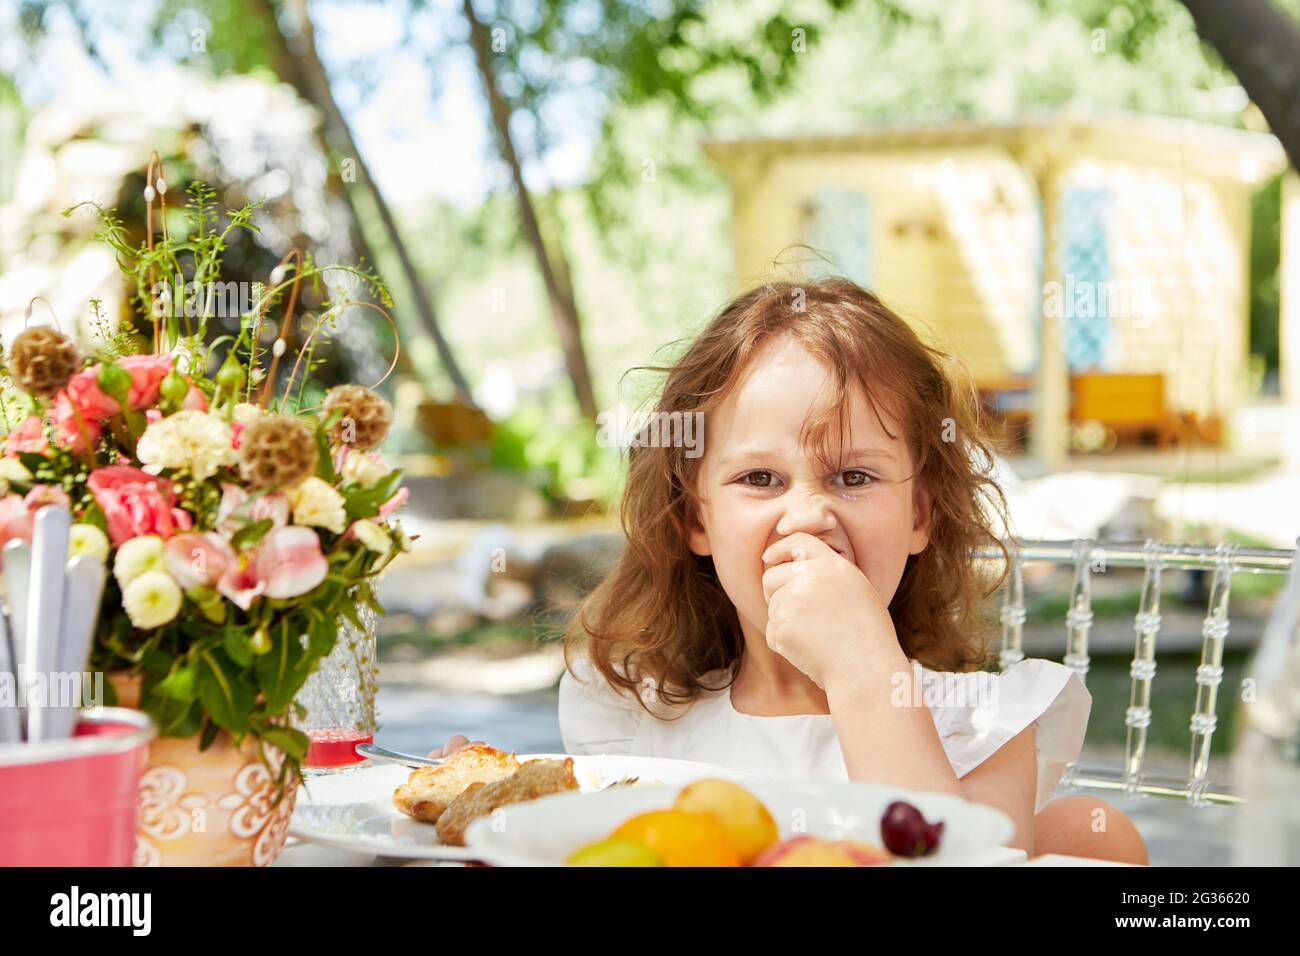 Carino bambino che mangia cibo gustoso mentre si siede al tavolo in cortile e guardando la macchina fotografica Foto Stock